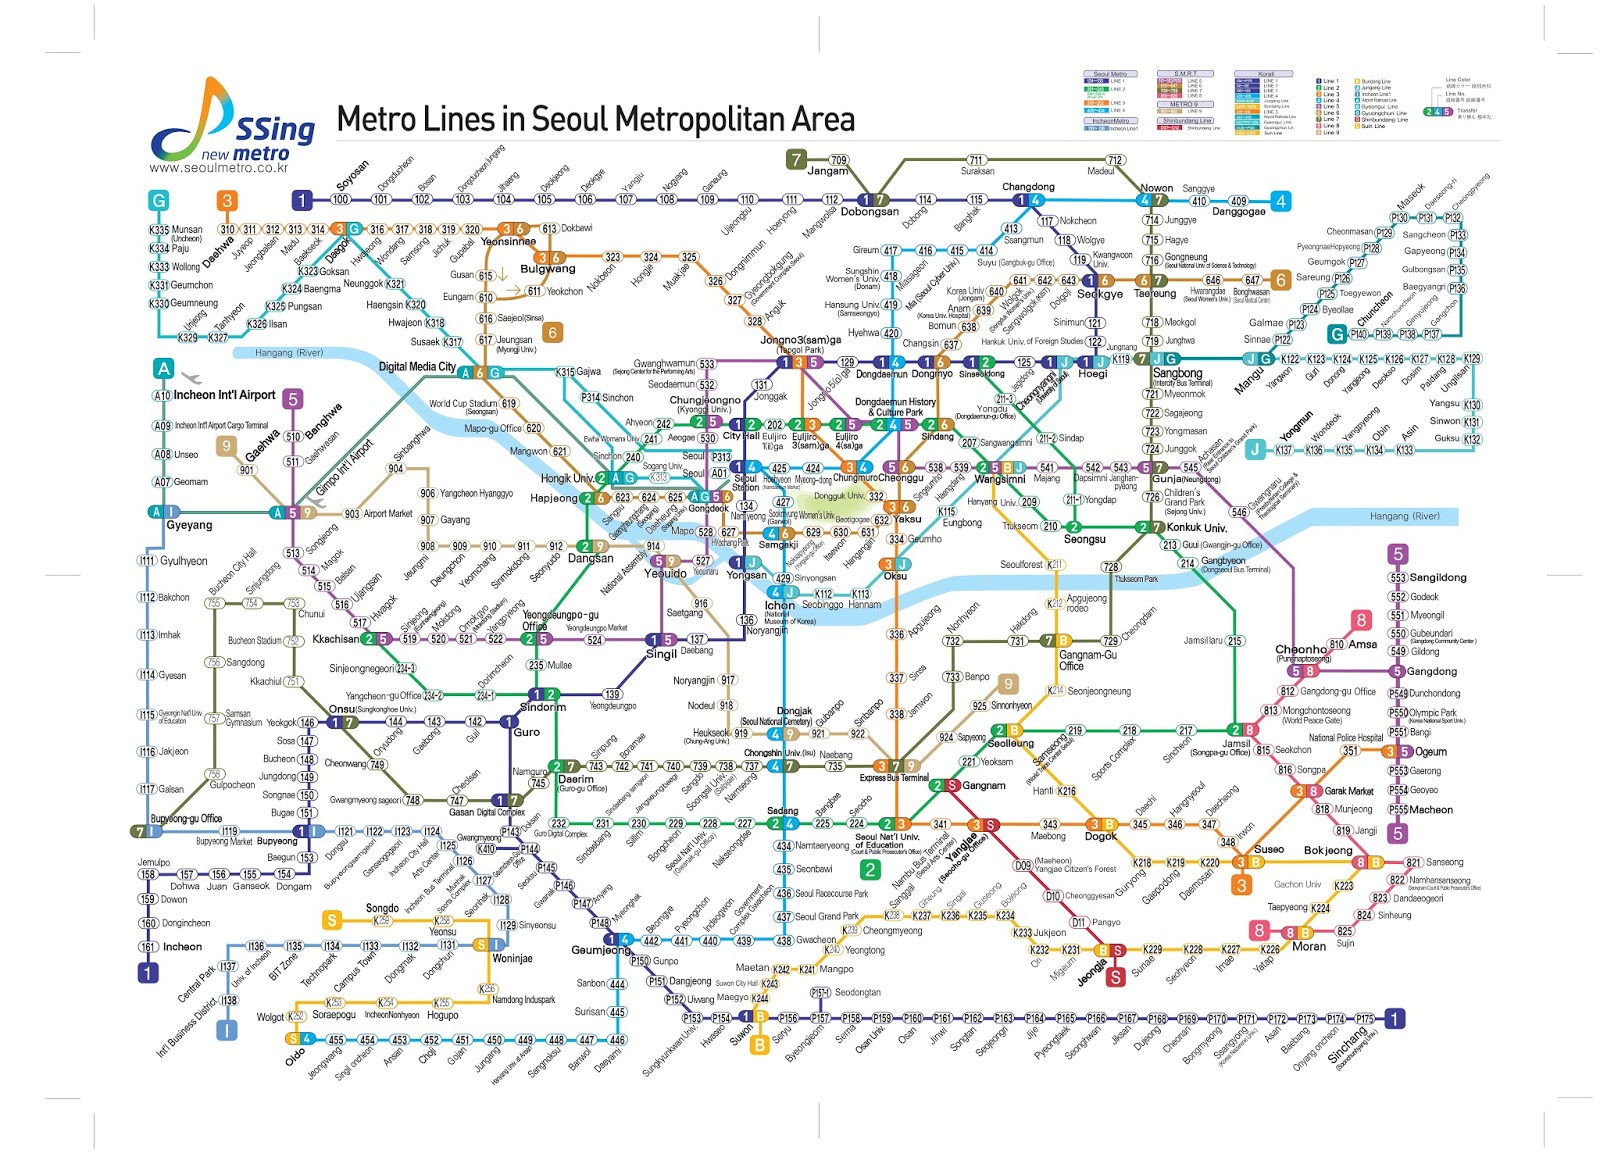 Tàu điện ngầm Seoul: Với hệ thống tàu điện ngầm hiện đại và đa dạng đến từ Seoul, bạn sẽ có một hành trình di chuyển thuận tiện và nhanh chóng khi đến Hàn Quốc. Với đội ngũ nhân viên chuyên nghiệp và dịch vụ tốt, bạn sẽ có cảm giác như đang được đón tiếp tại nhà. Hãy trải nghiệm dịch vụ hàng đầu này khi đến Seoul.